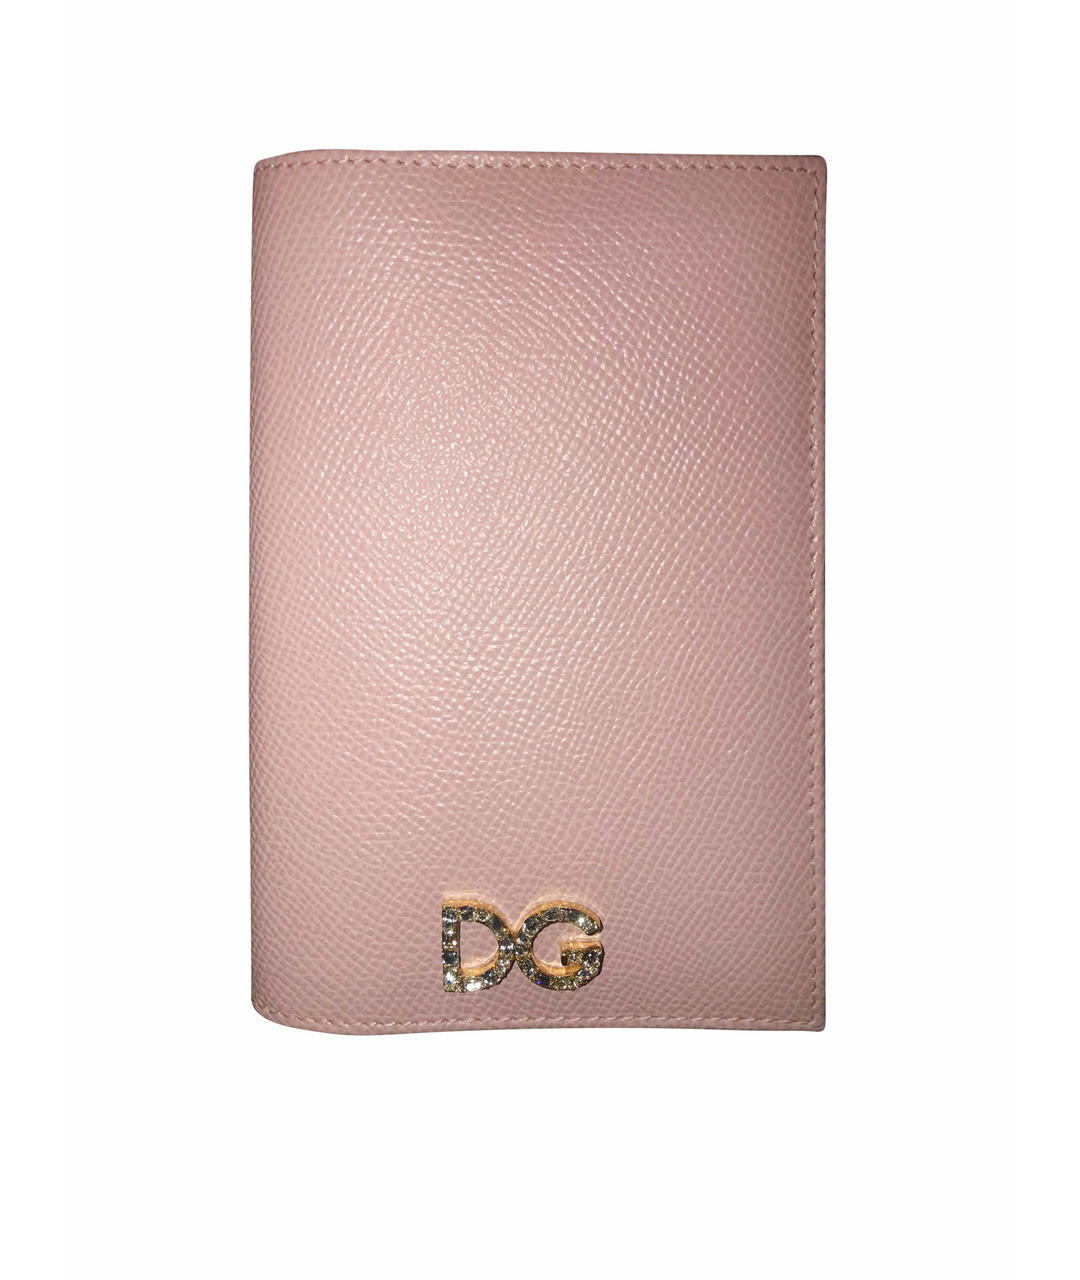 DOLCE&GABBANA Розовый кожаный кошелек, фото 1